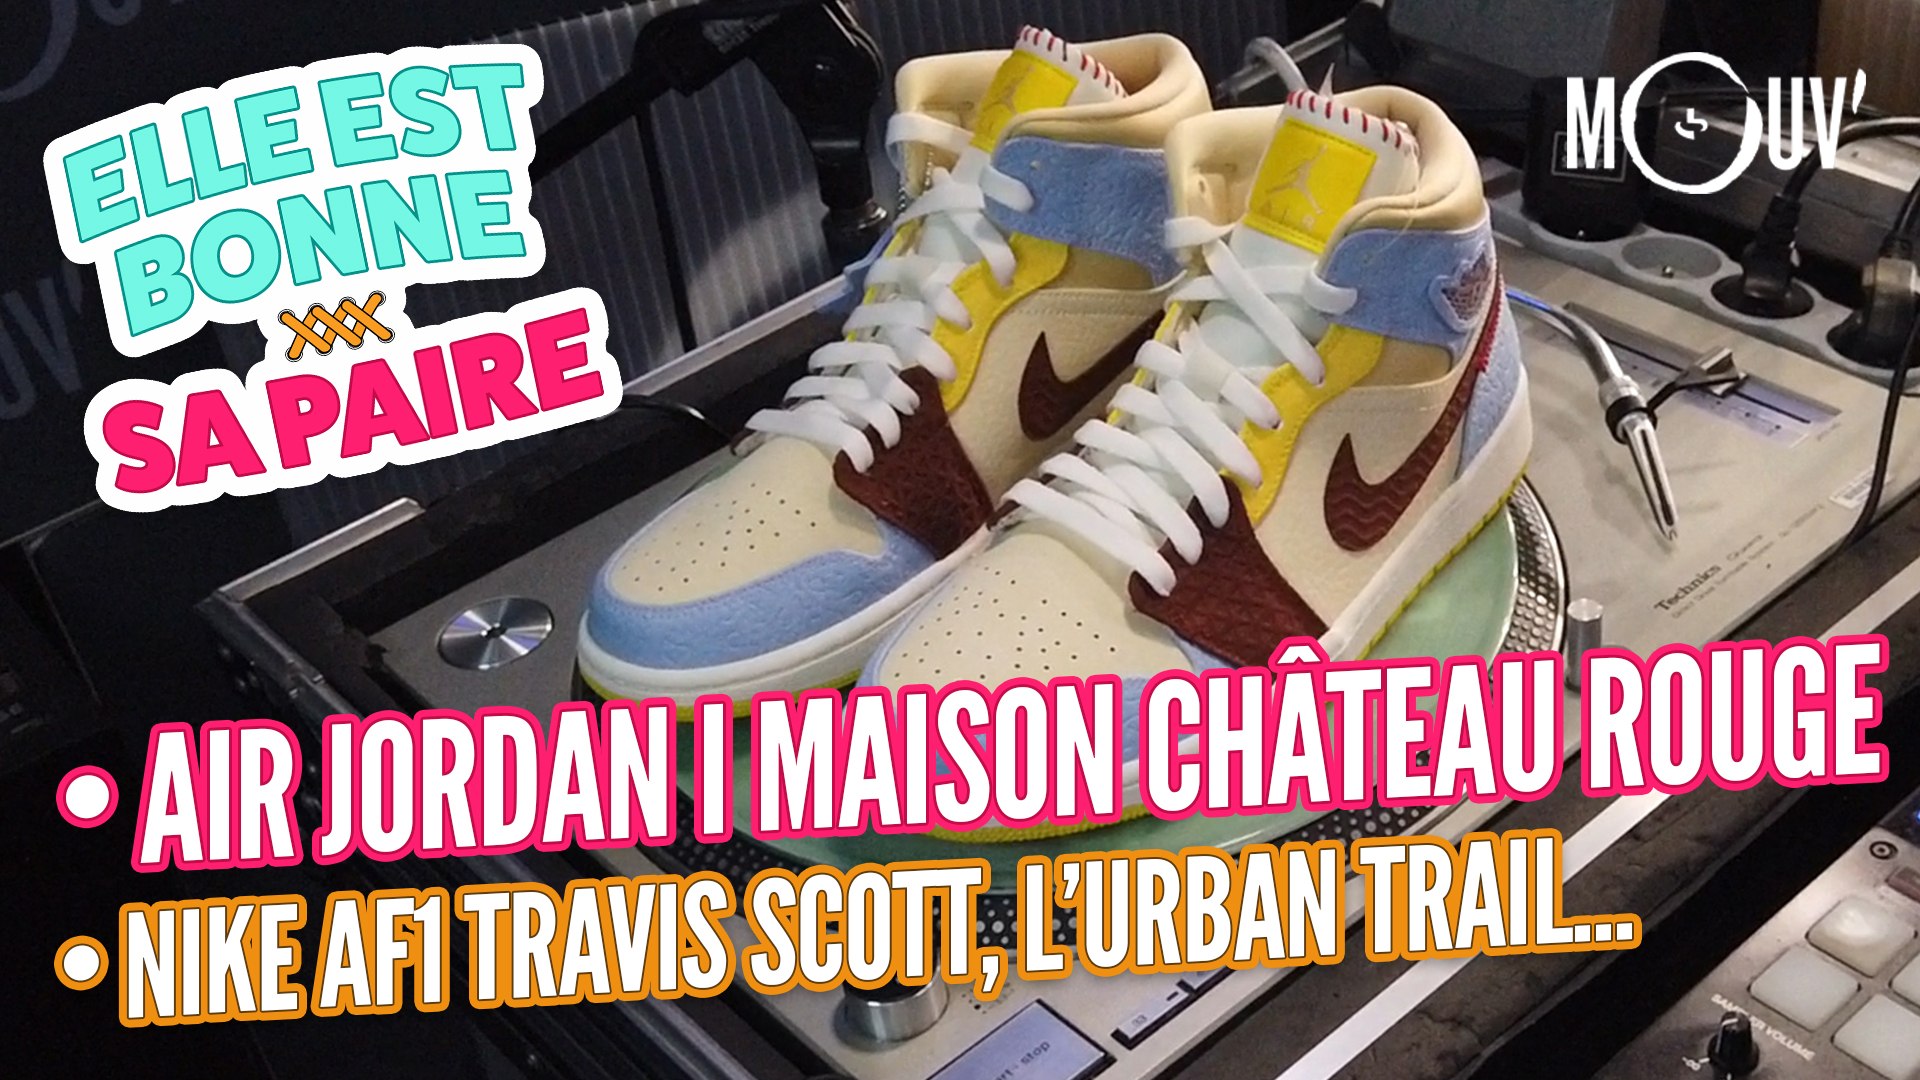 Elle est bonne sa paire : Air Jordan 1 Maison Château Rouge, Nike AF1  Travis Scott, le trail... - Vidéo Dailymotion